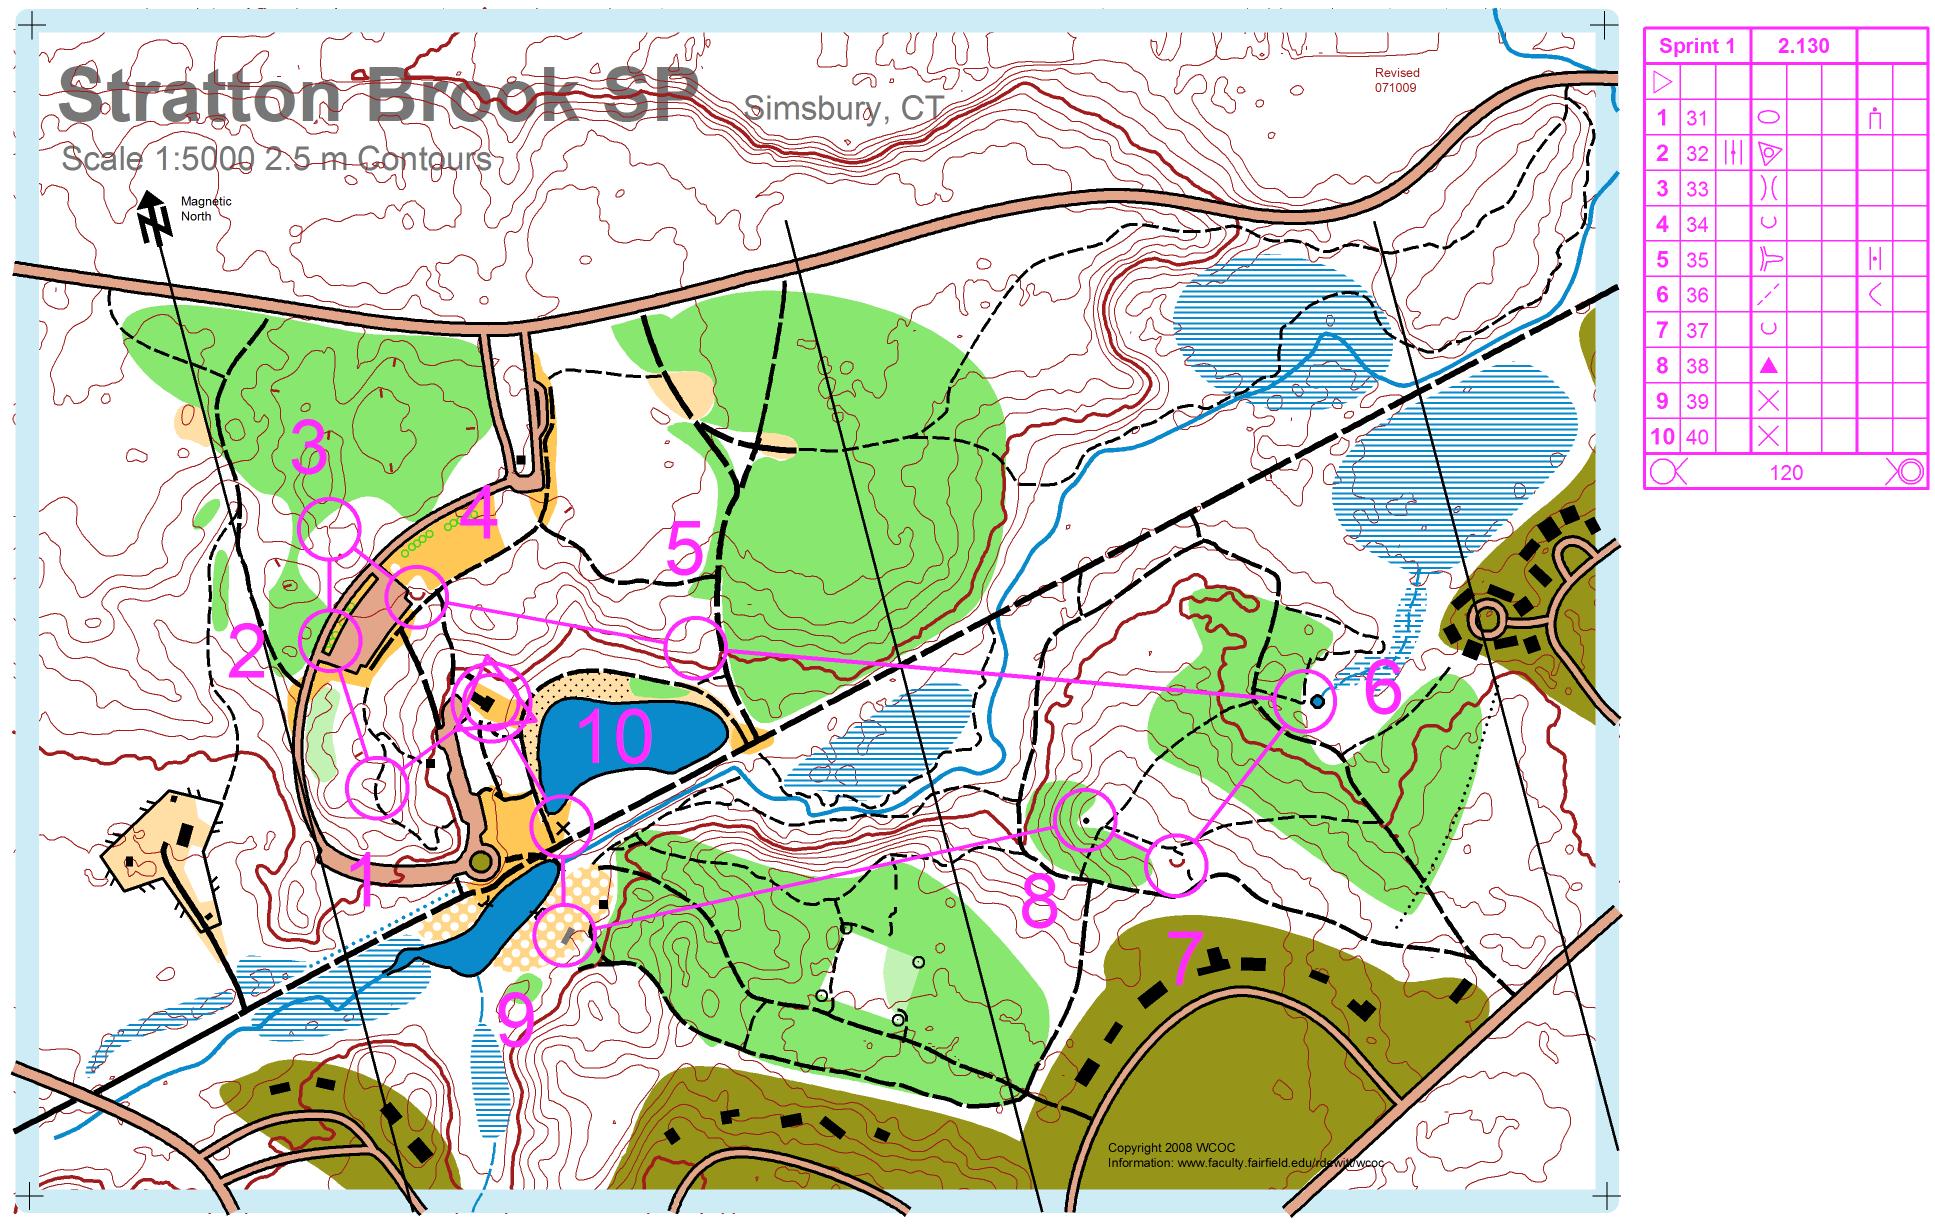 Stratton Brook Sprint 1 (2009-09-16)